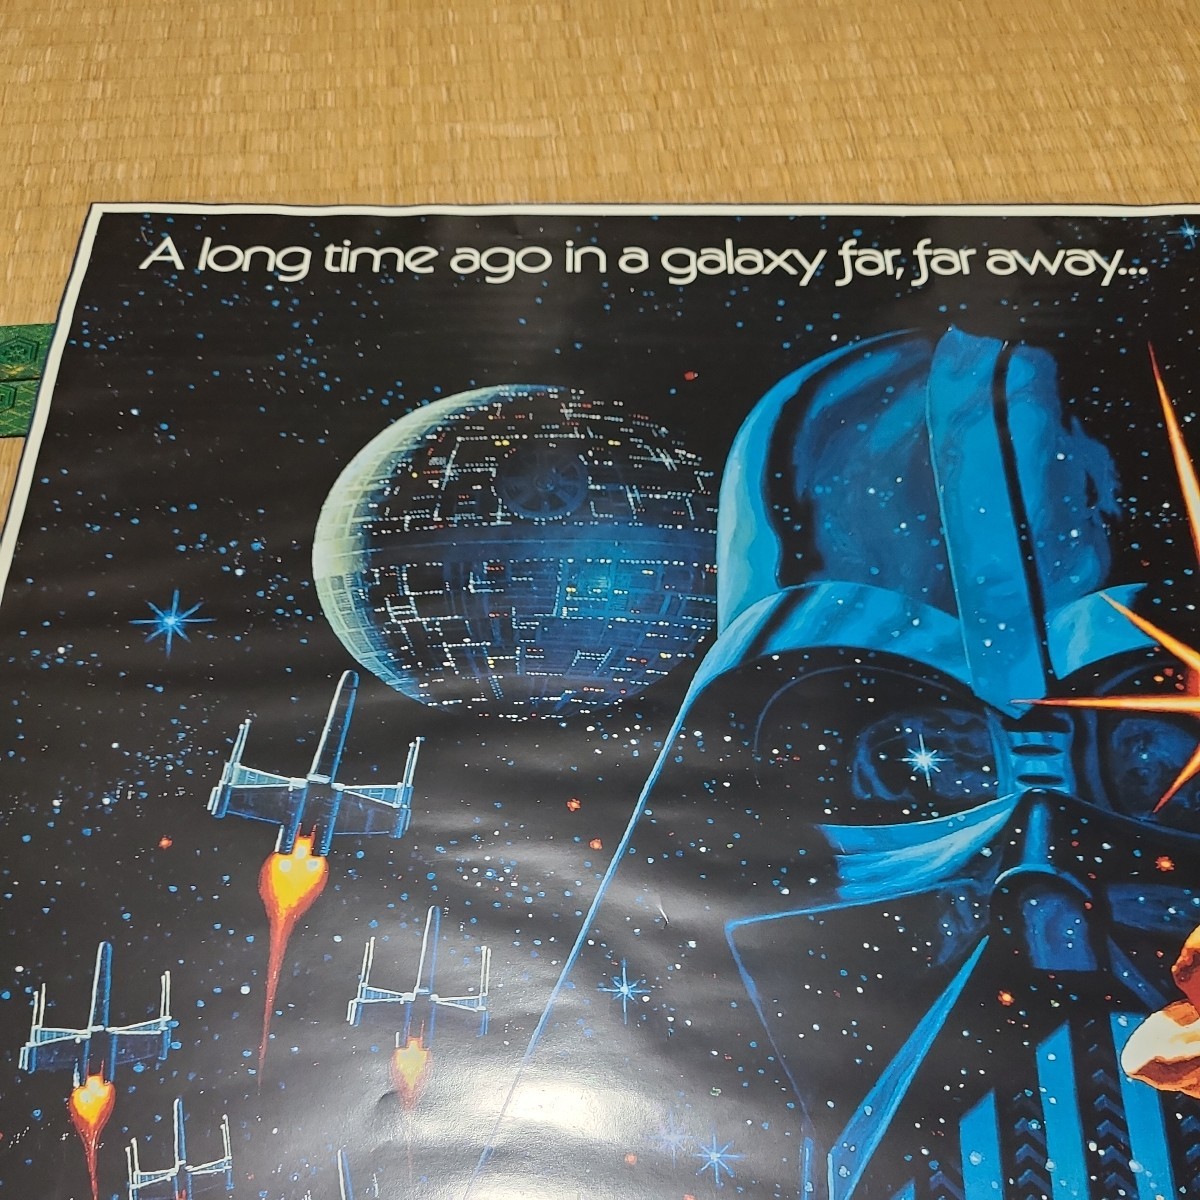  Звездные войны постер английская версия Star wars